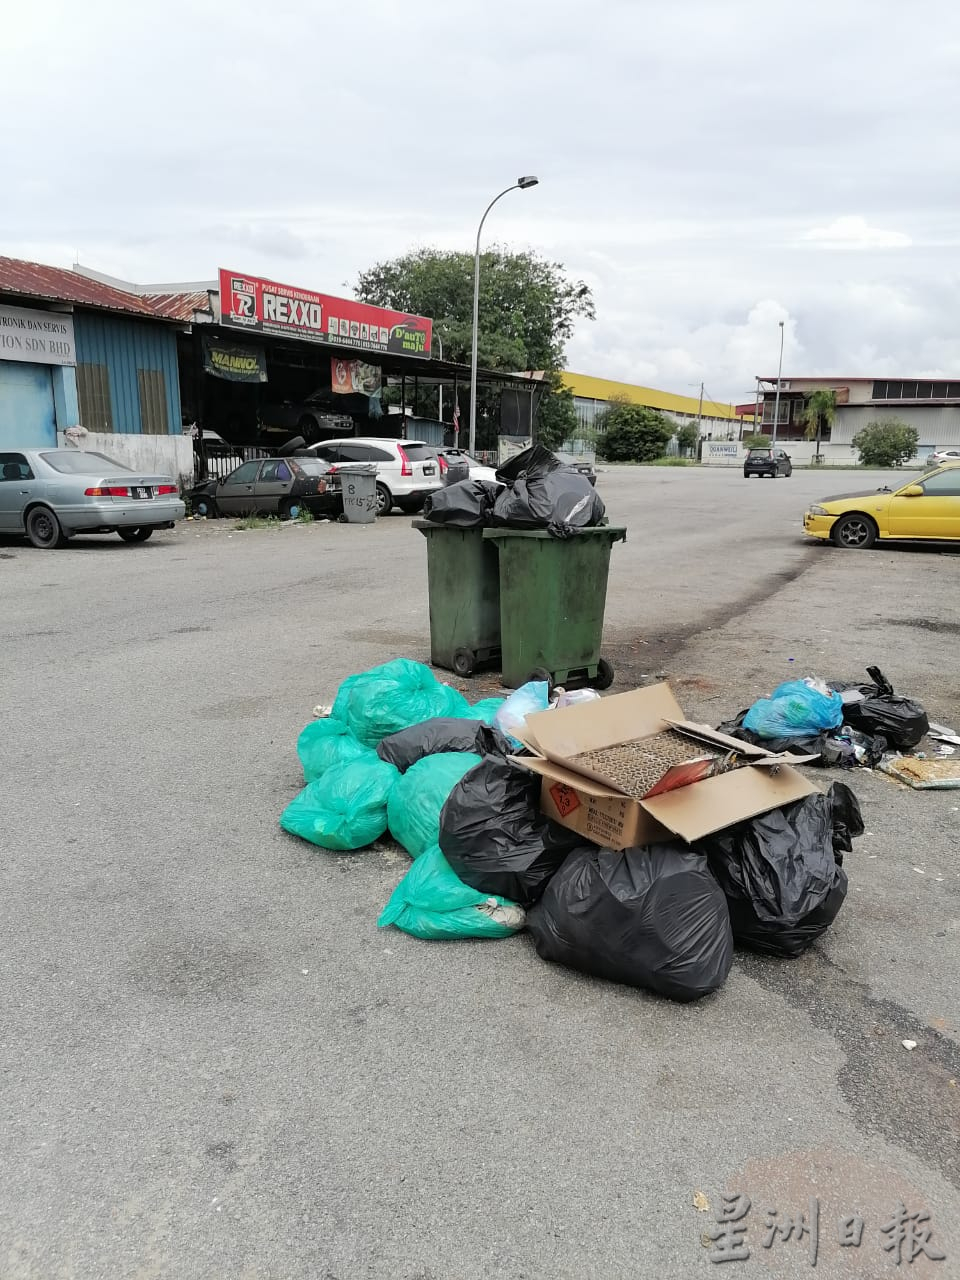 （古城第二版主文 玛琳再也居协呼吁政府重新考虑不收取工业区垃圾的政策